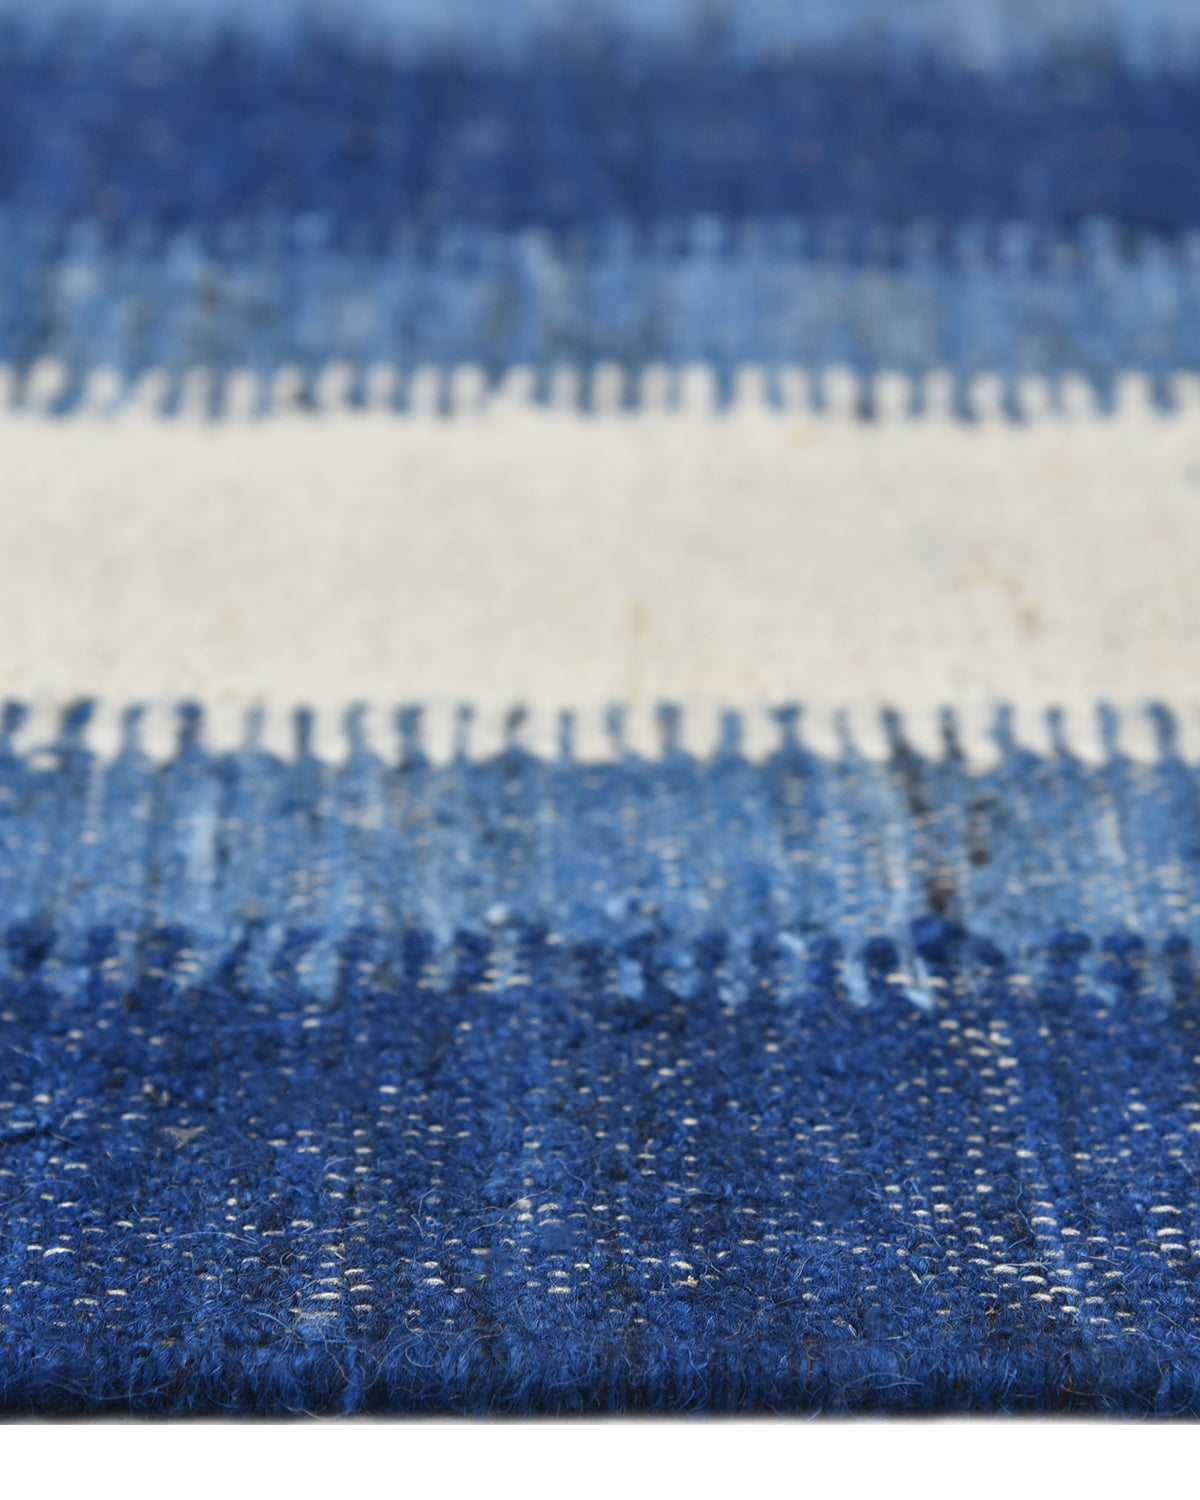 Levi Handmade Contemporary Striped Blue Area Rug